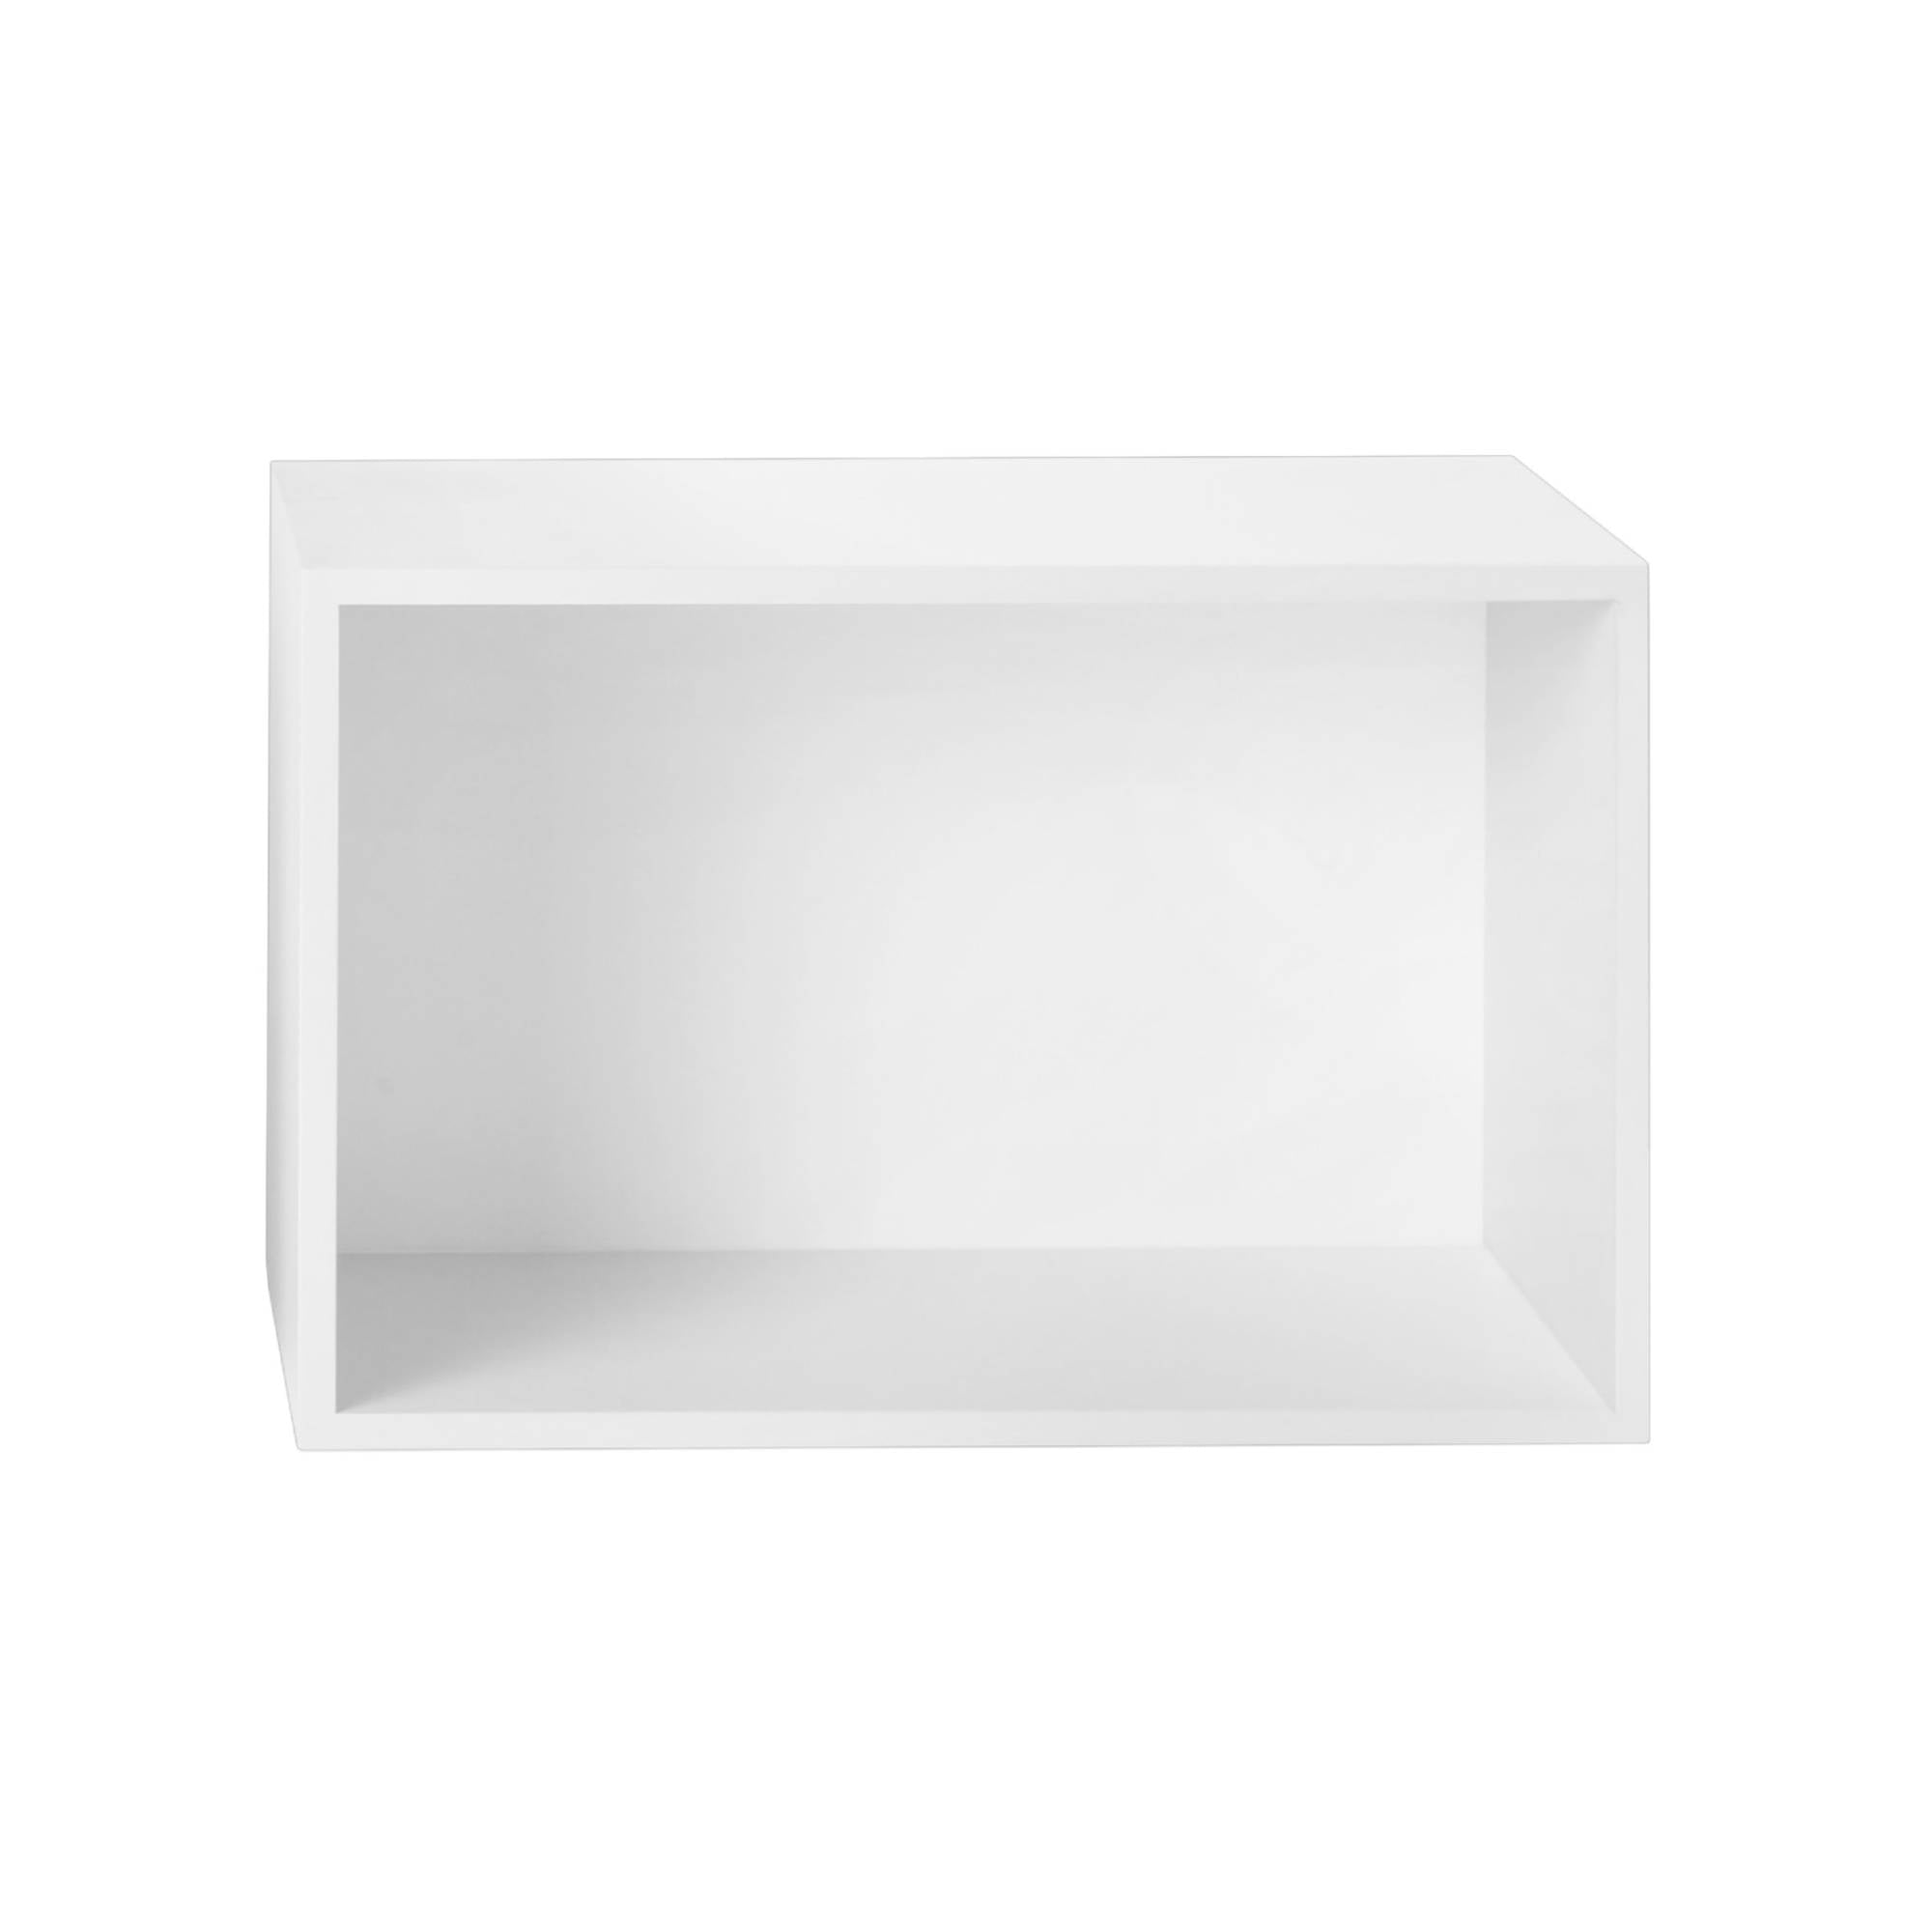 Stacked Storage 2.0: Backboard Module - Large + White